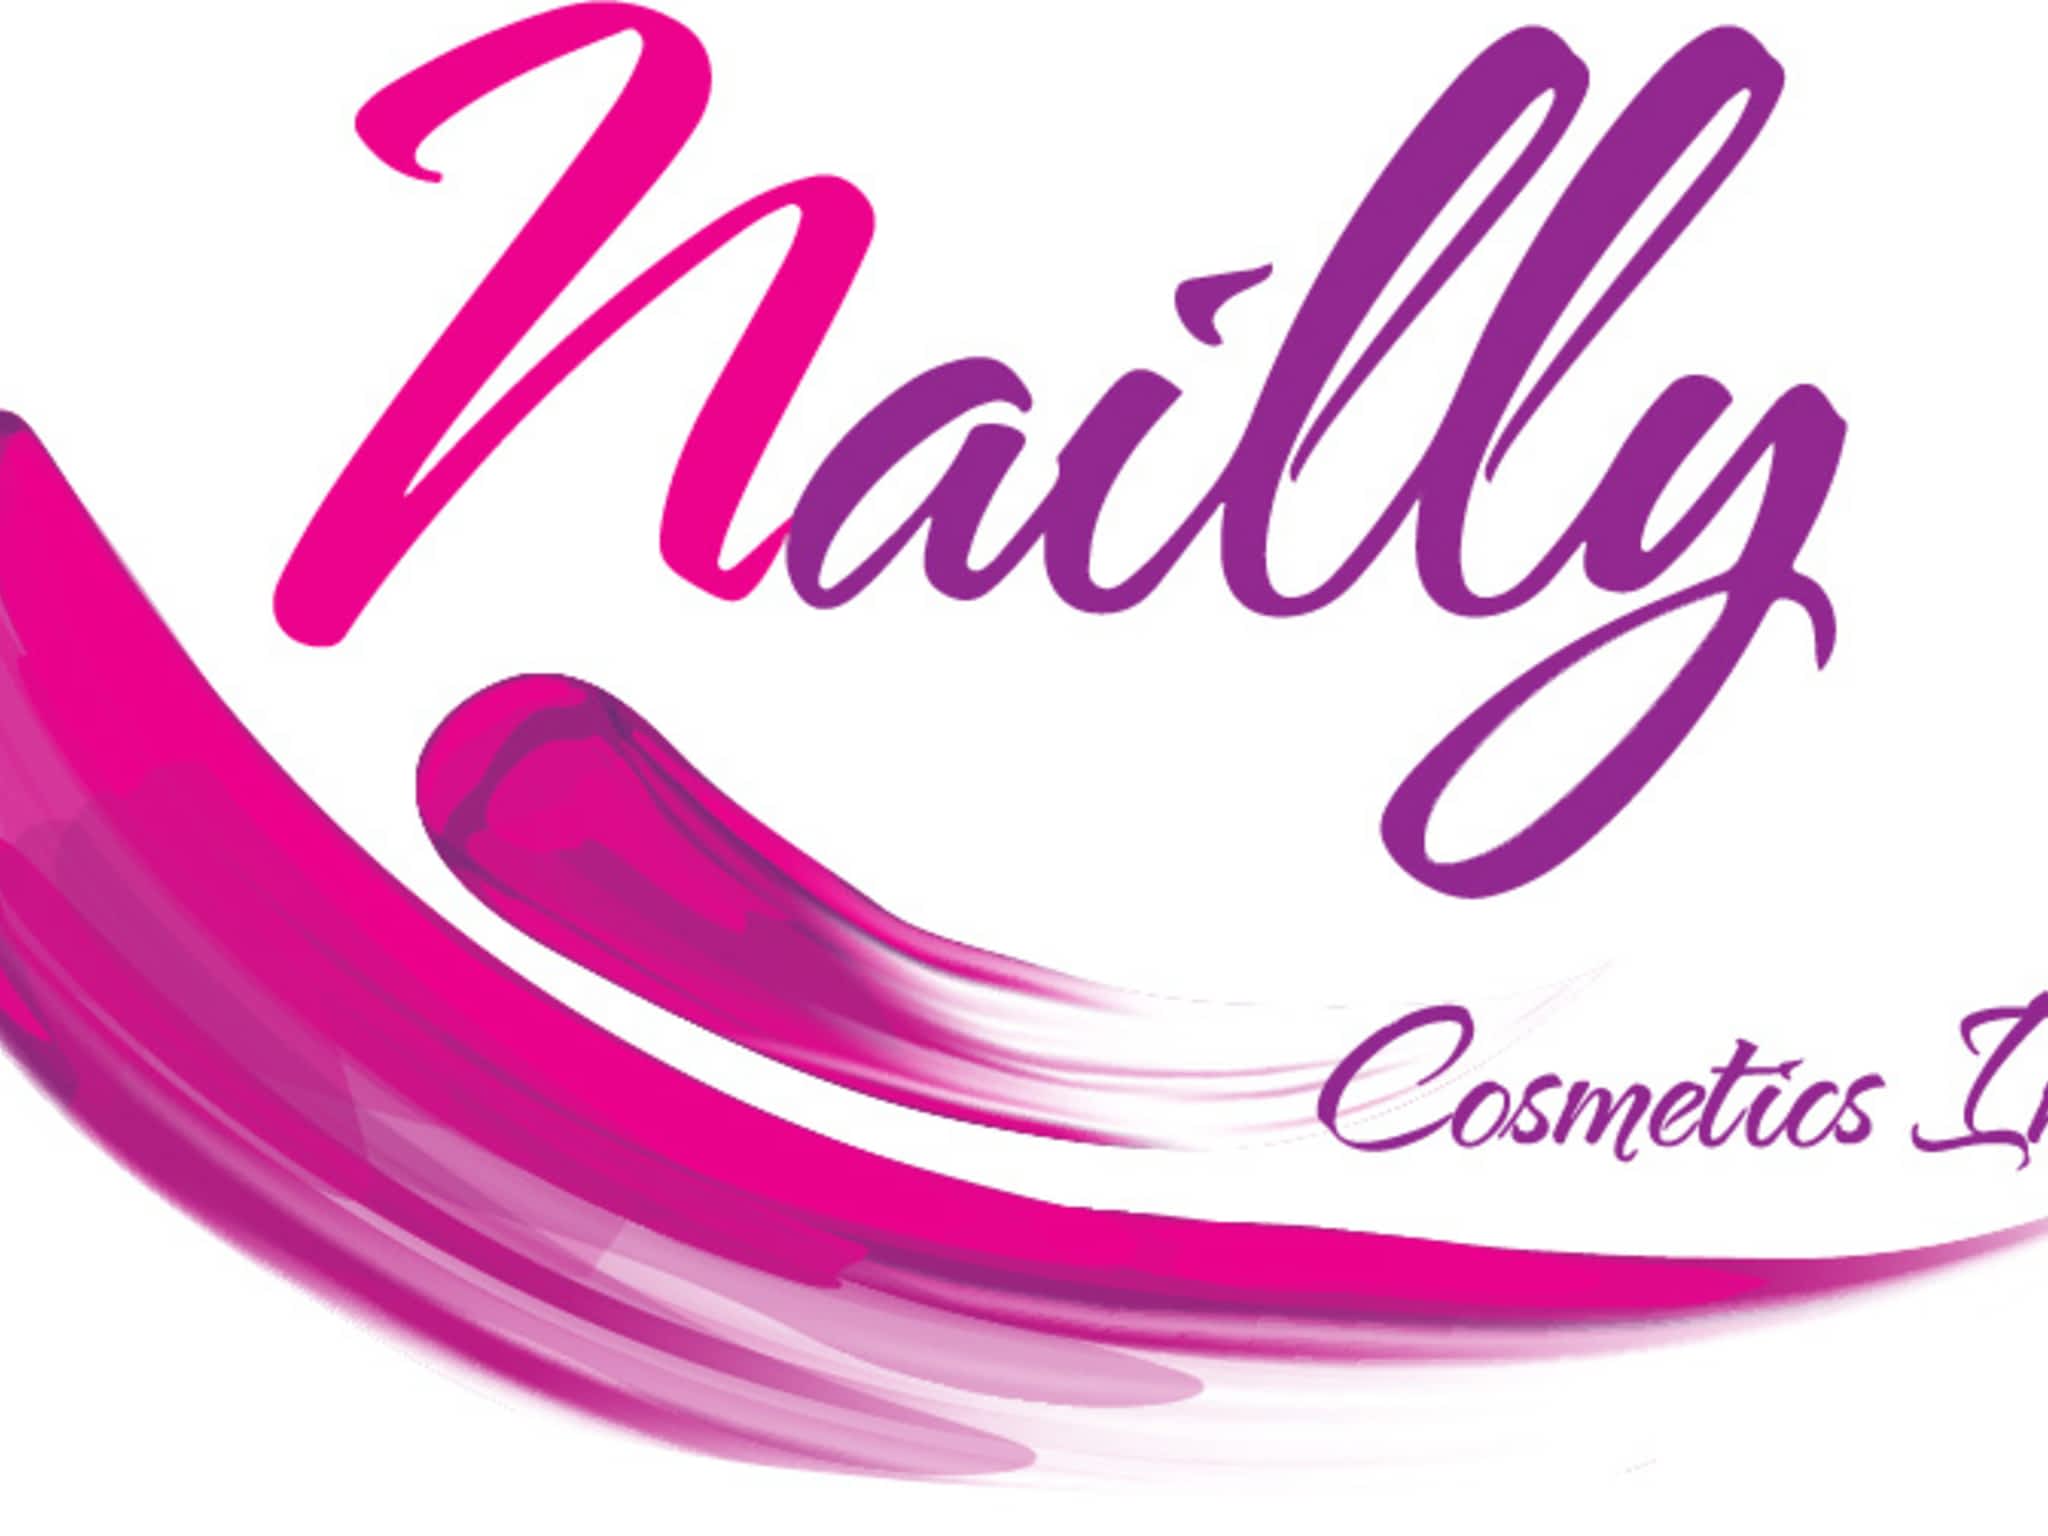 photo Nailly Cosmetics Inc (Victoria VYNN Canada)